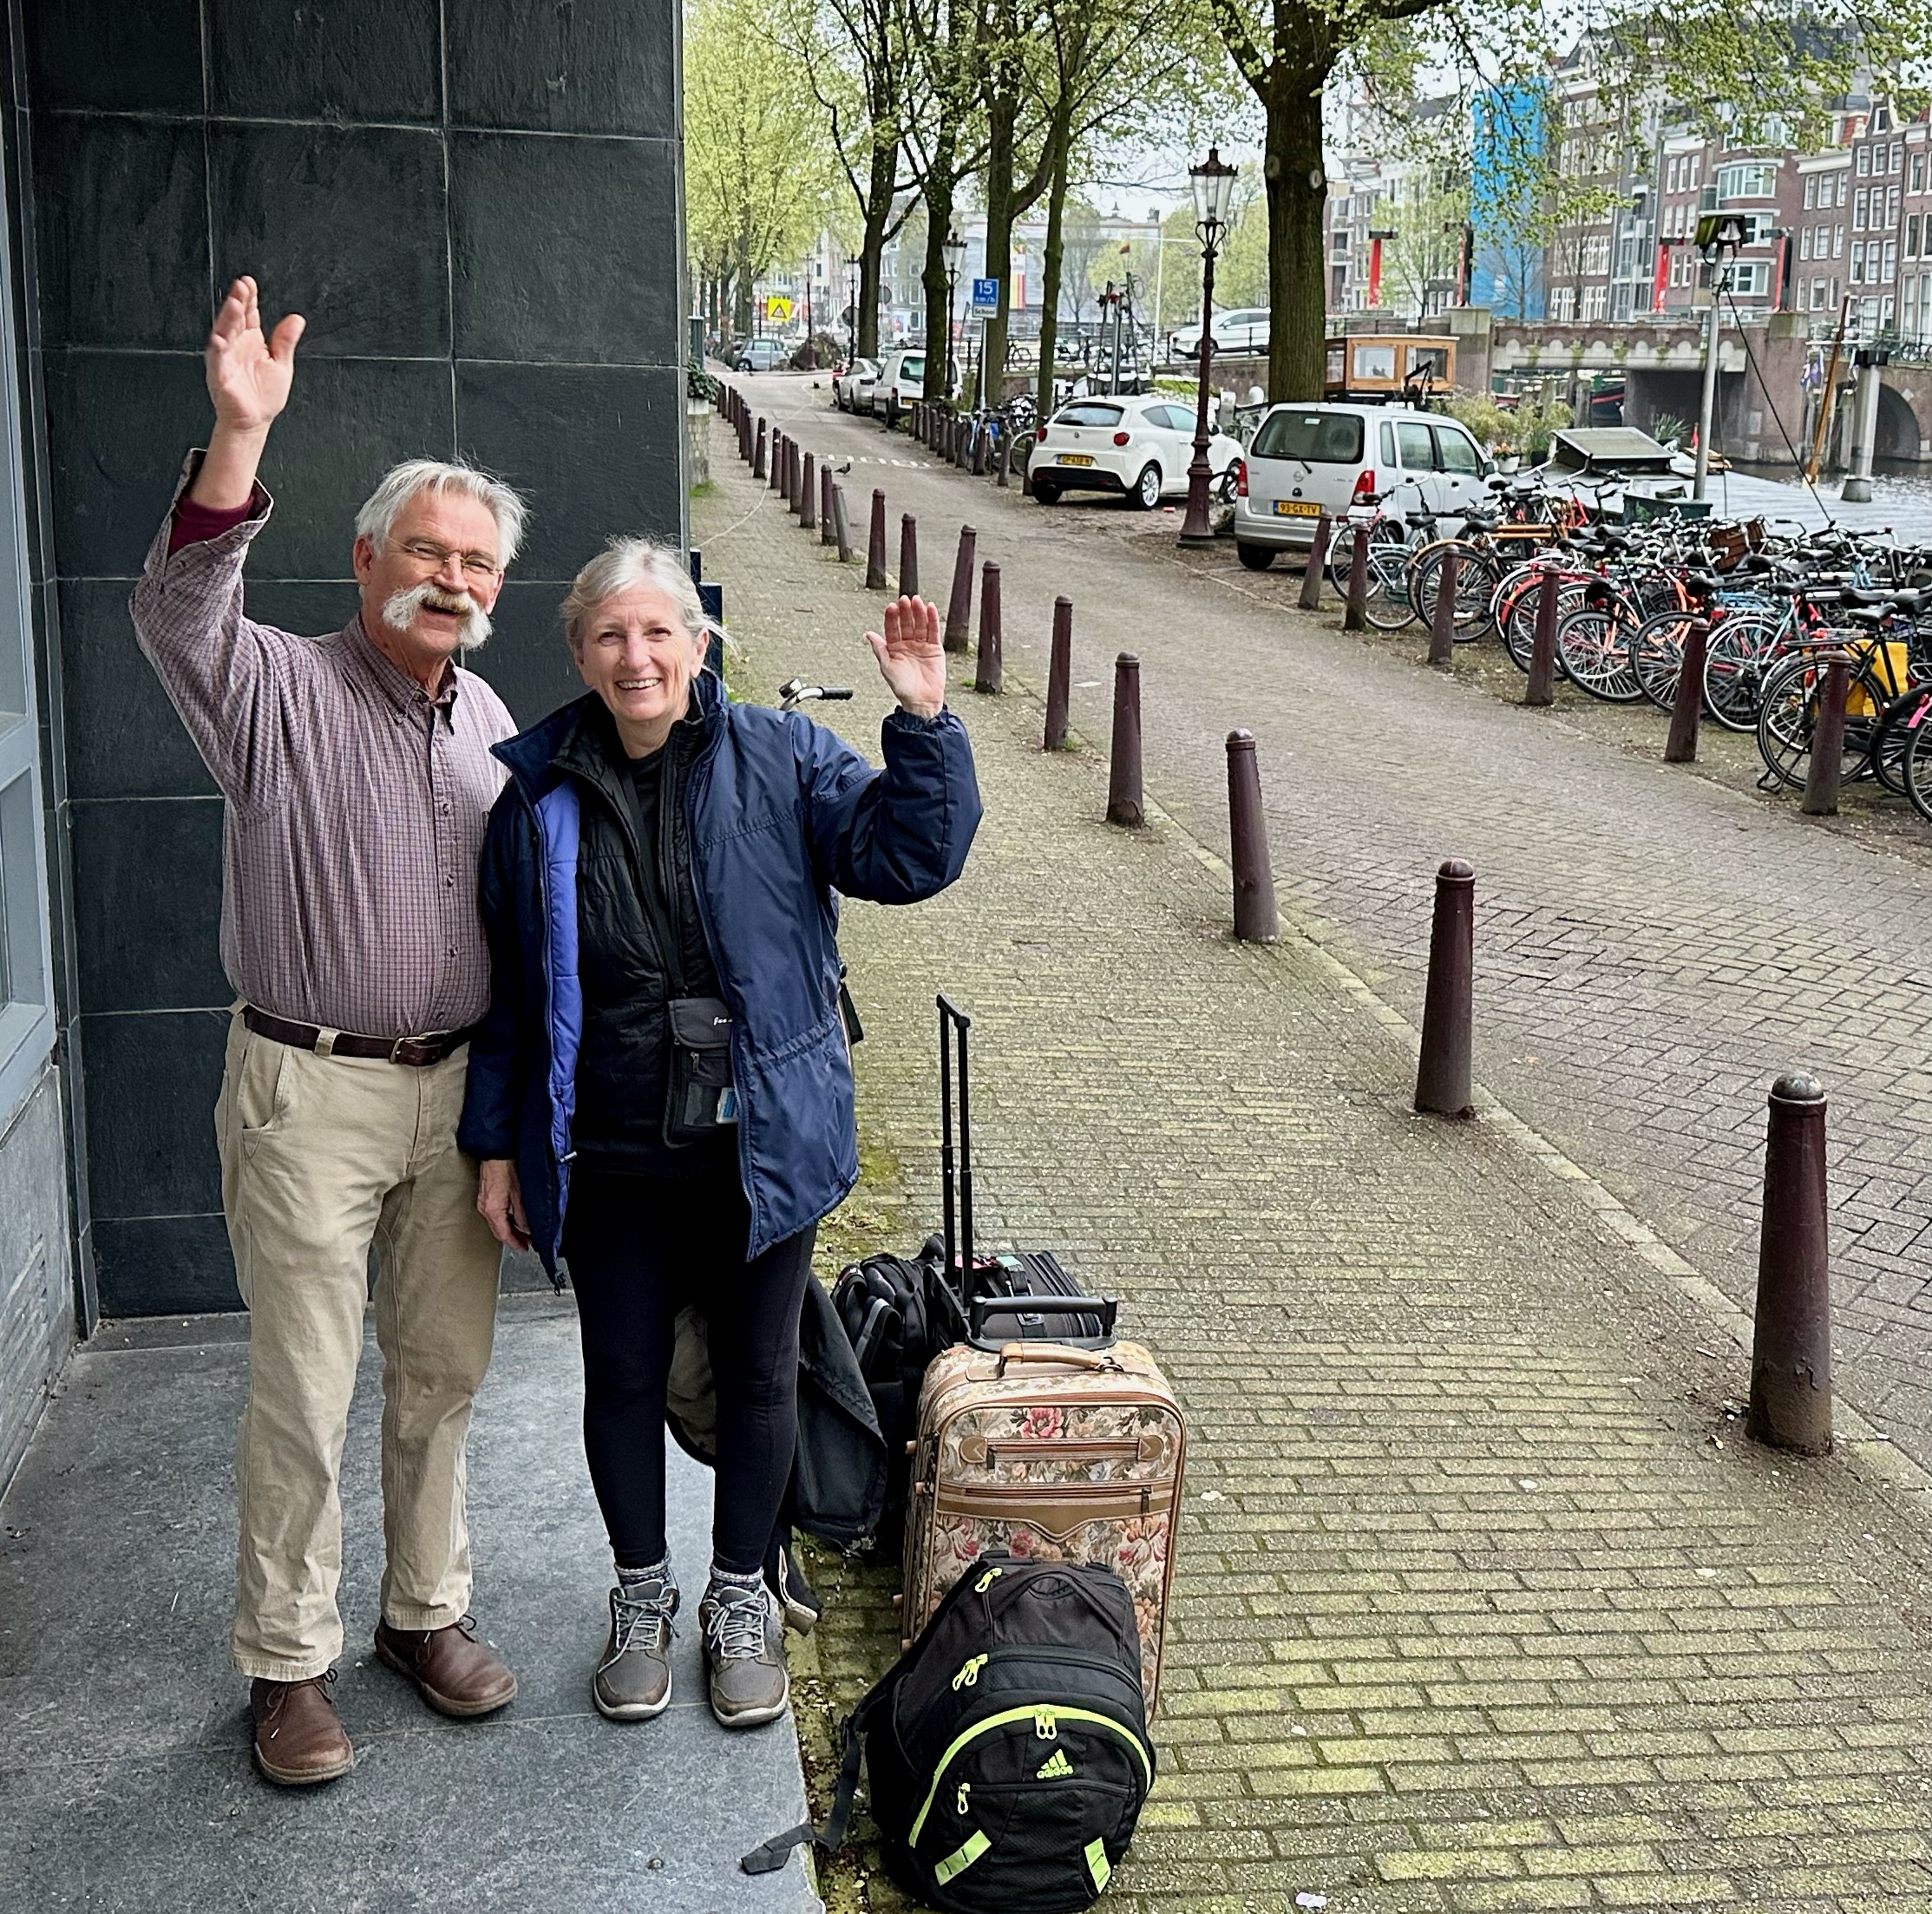 Return to Leiden